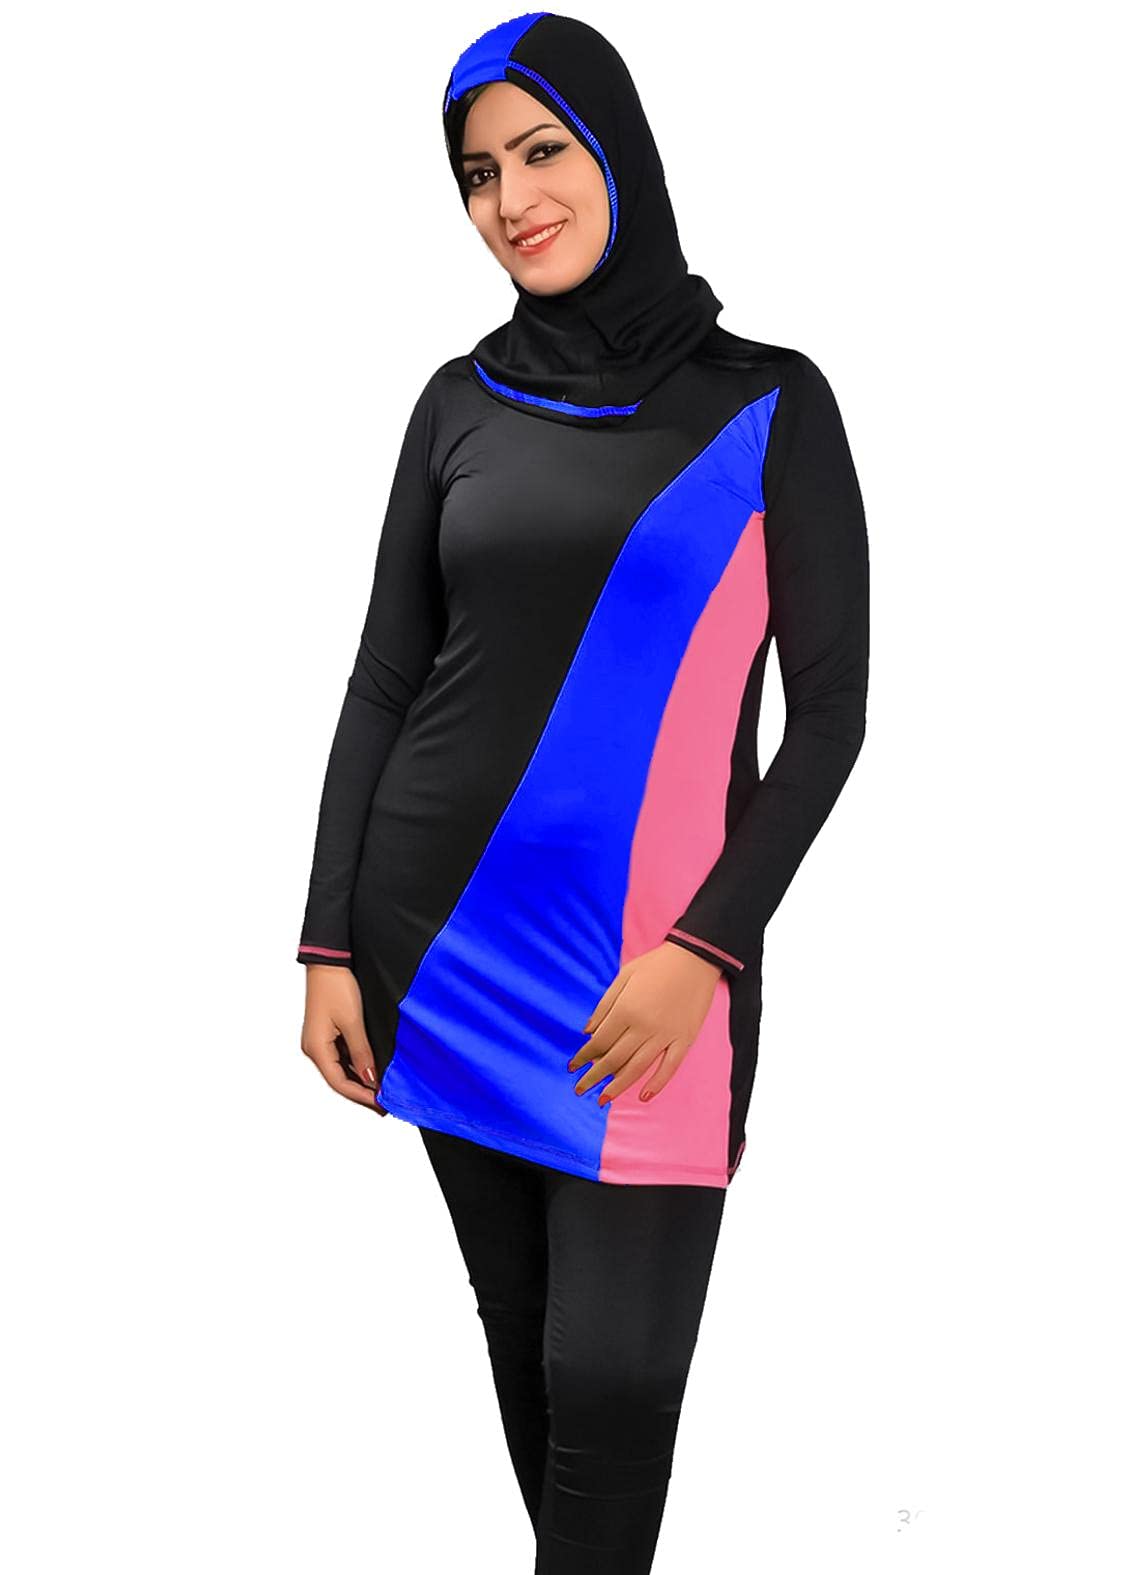 Sharia Burqini Swimwear - Color For Women , 2725618080708 Color Black Size XL